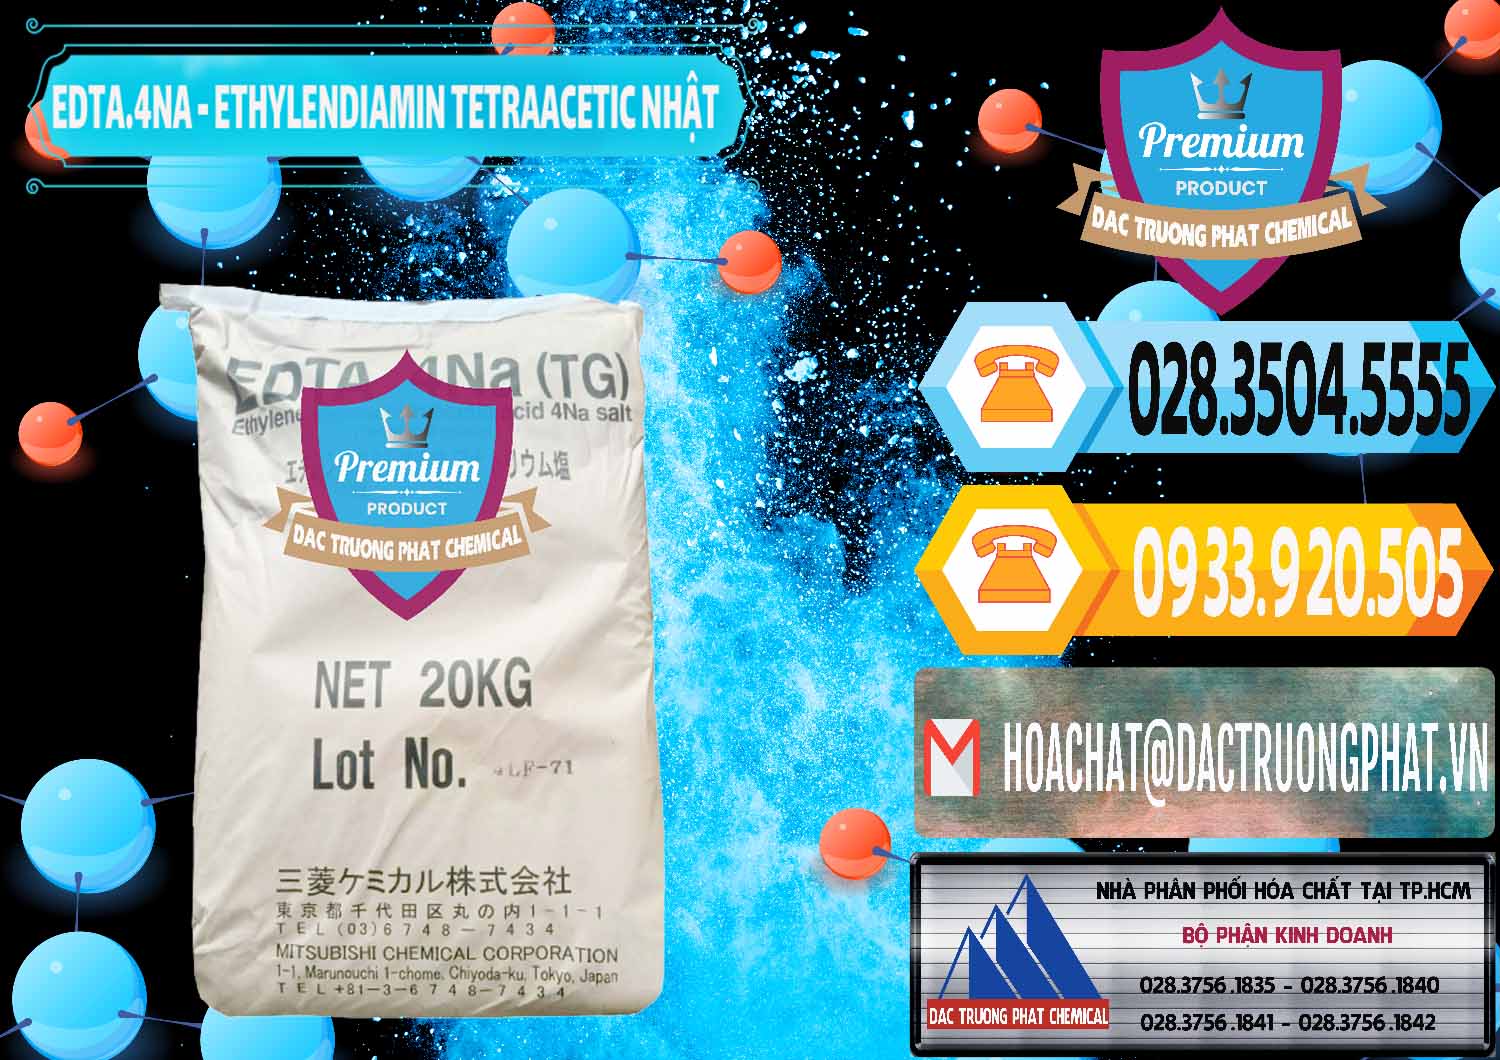 Chuyên cung cấp và bán EDTA 4Na - Ethylendiamin Tetraacetic Nhật Bản Japan - 0482 - Nơi phân phối ( bán ) hóa chất tại TP.HCM - hoachattayrua.net